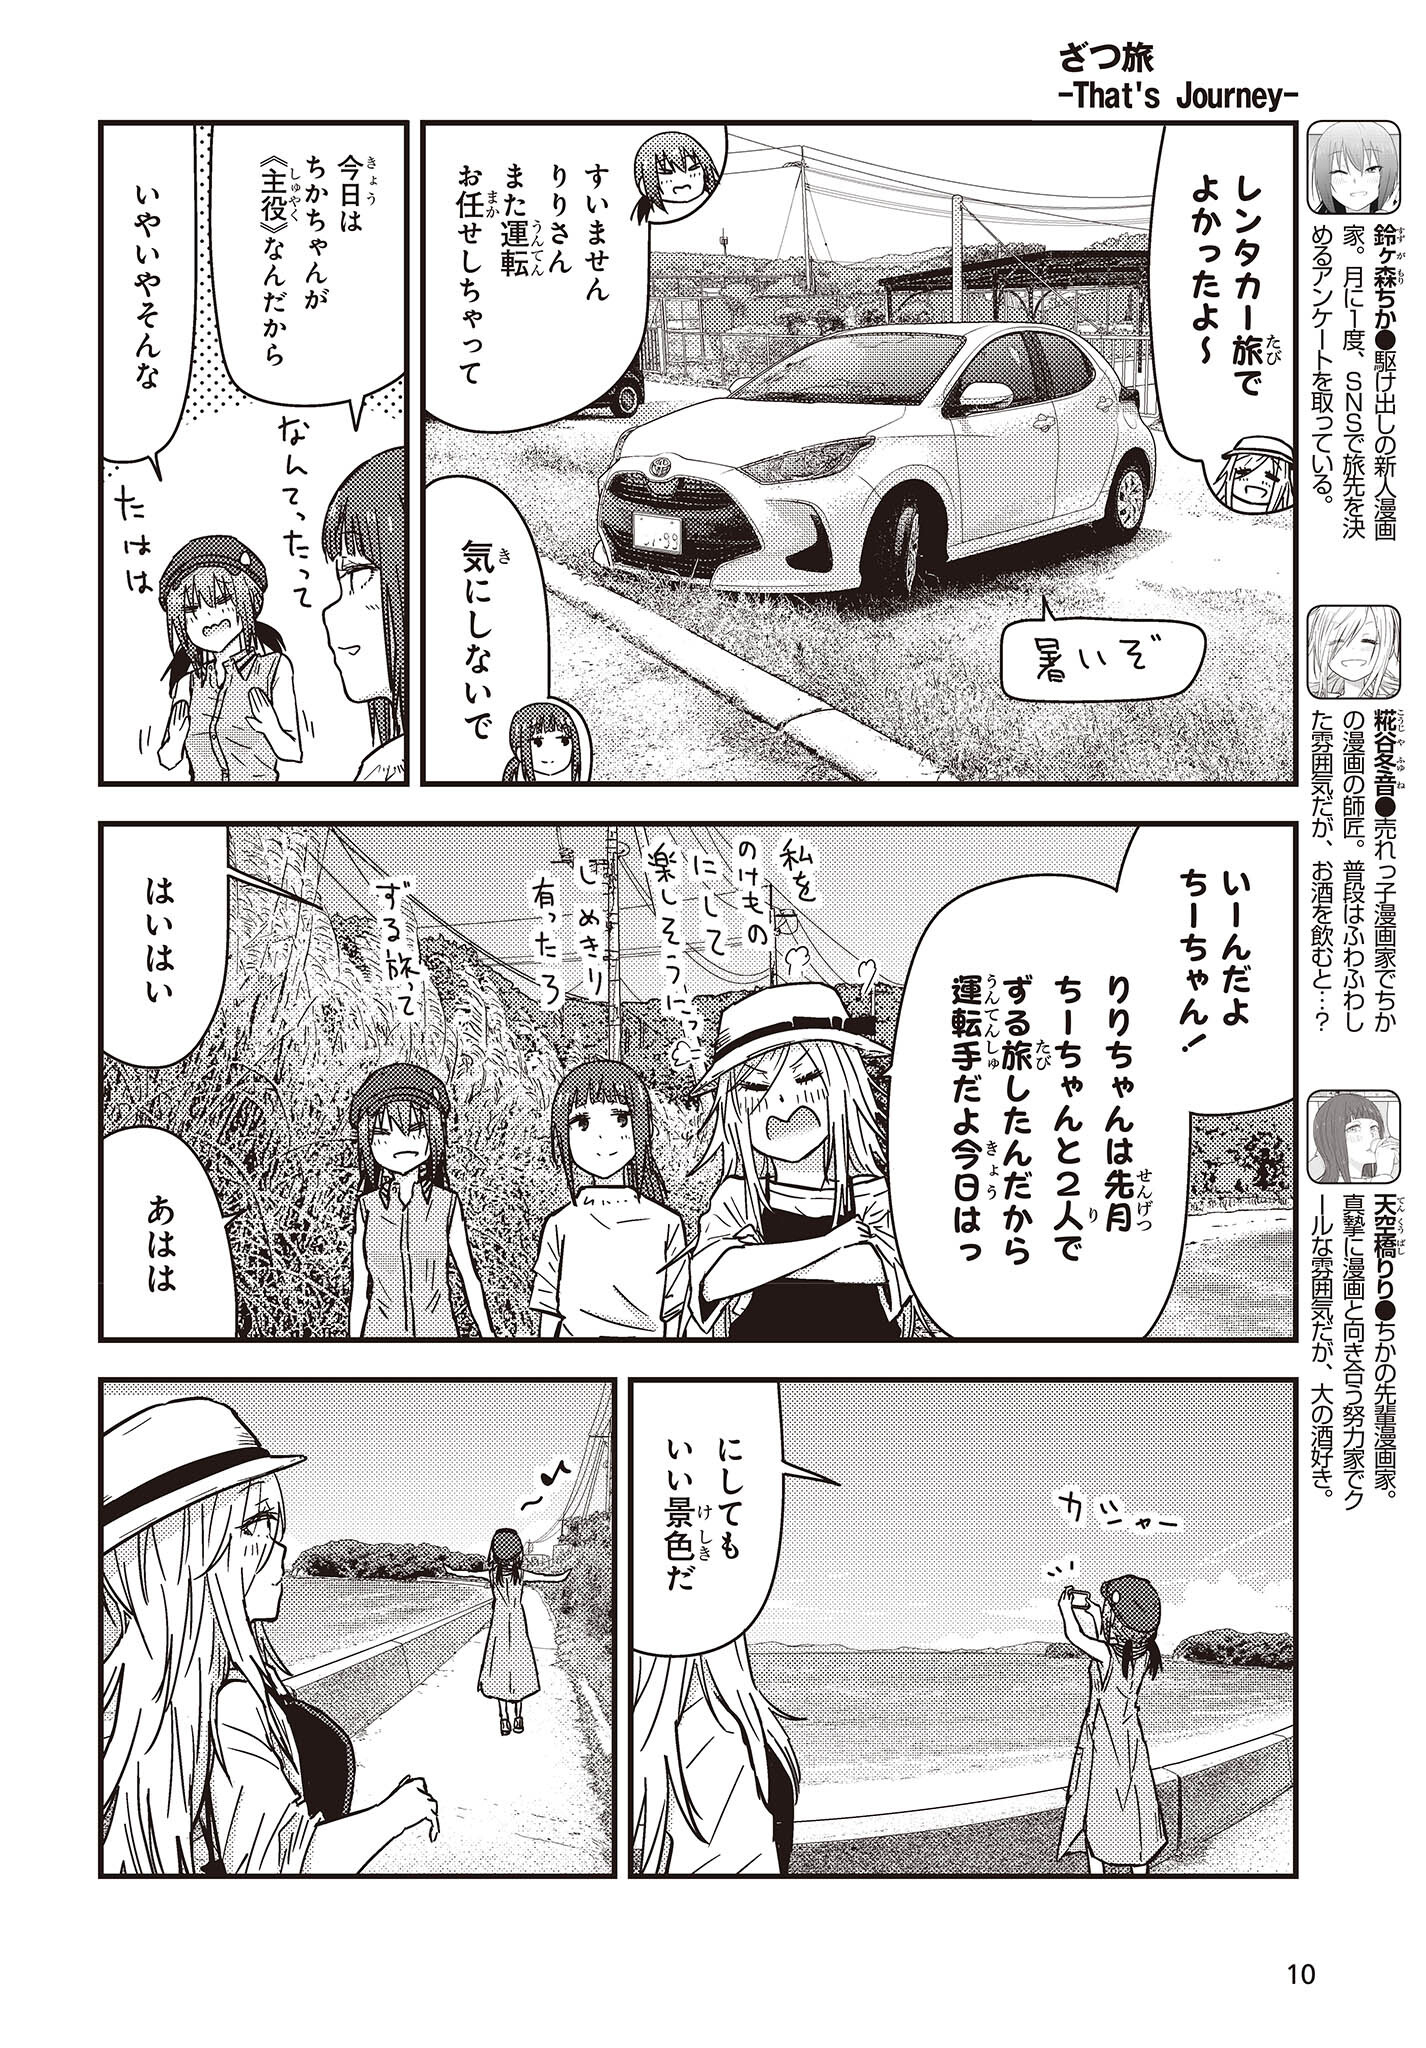 ざつ旅-That's Journey- 第33話 - Page 4